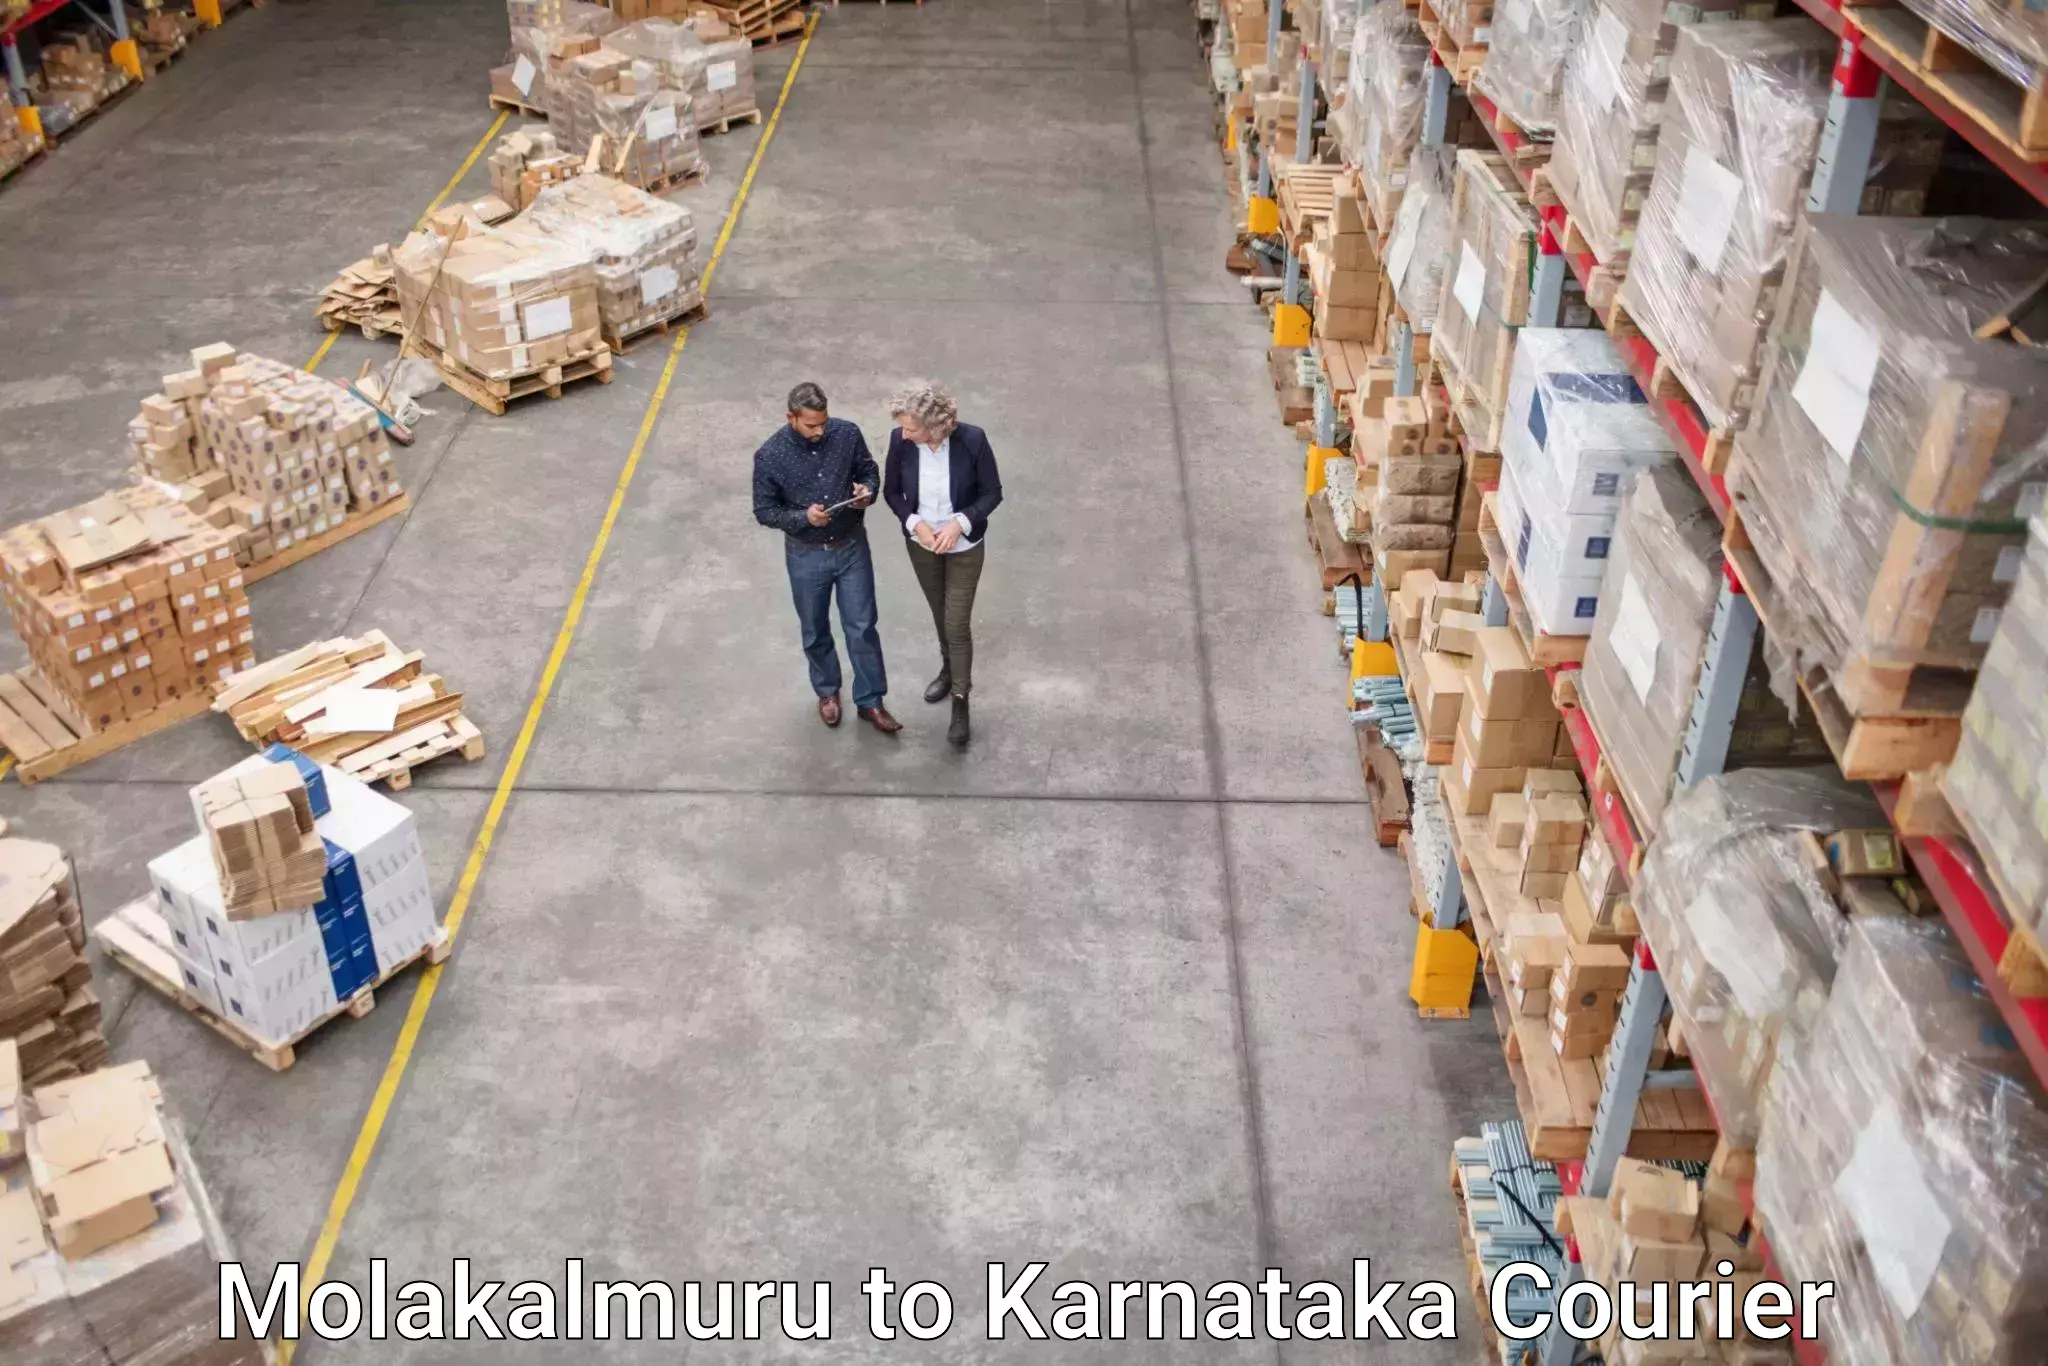 Business shipping needs in Molakalmuru to Banavara